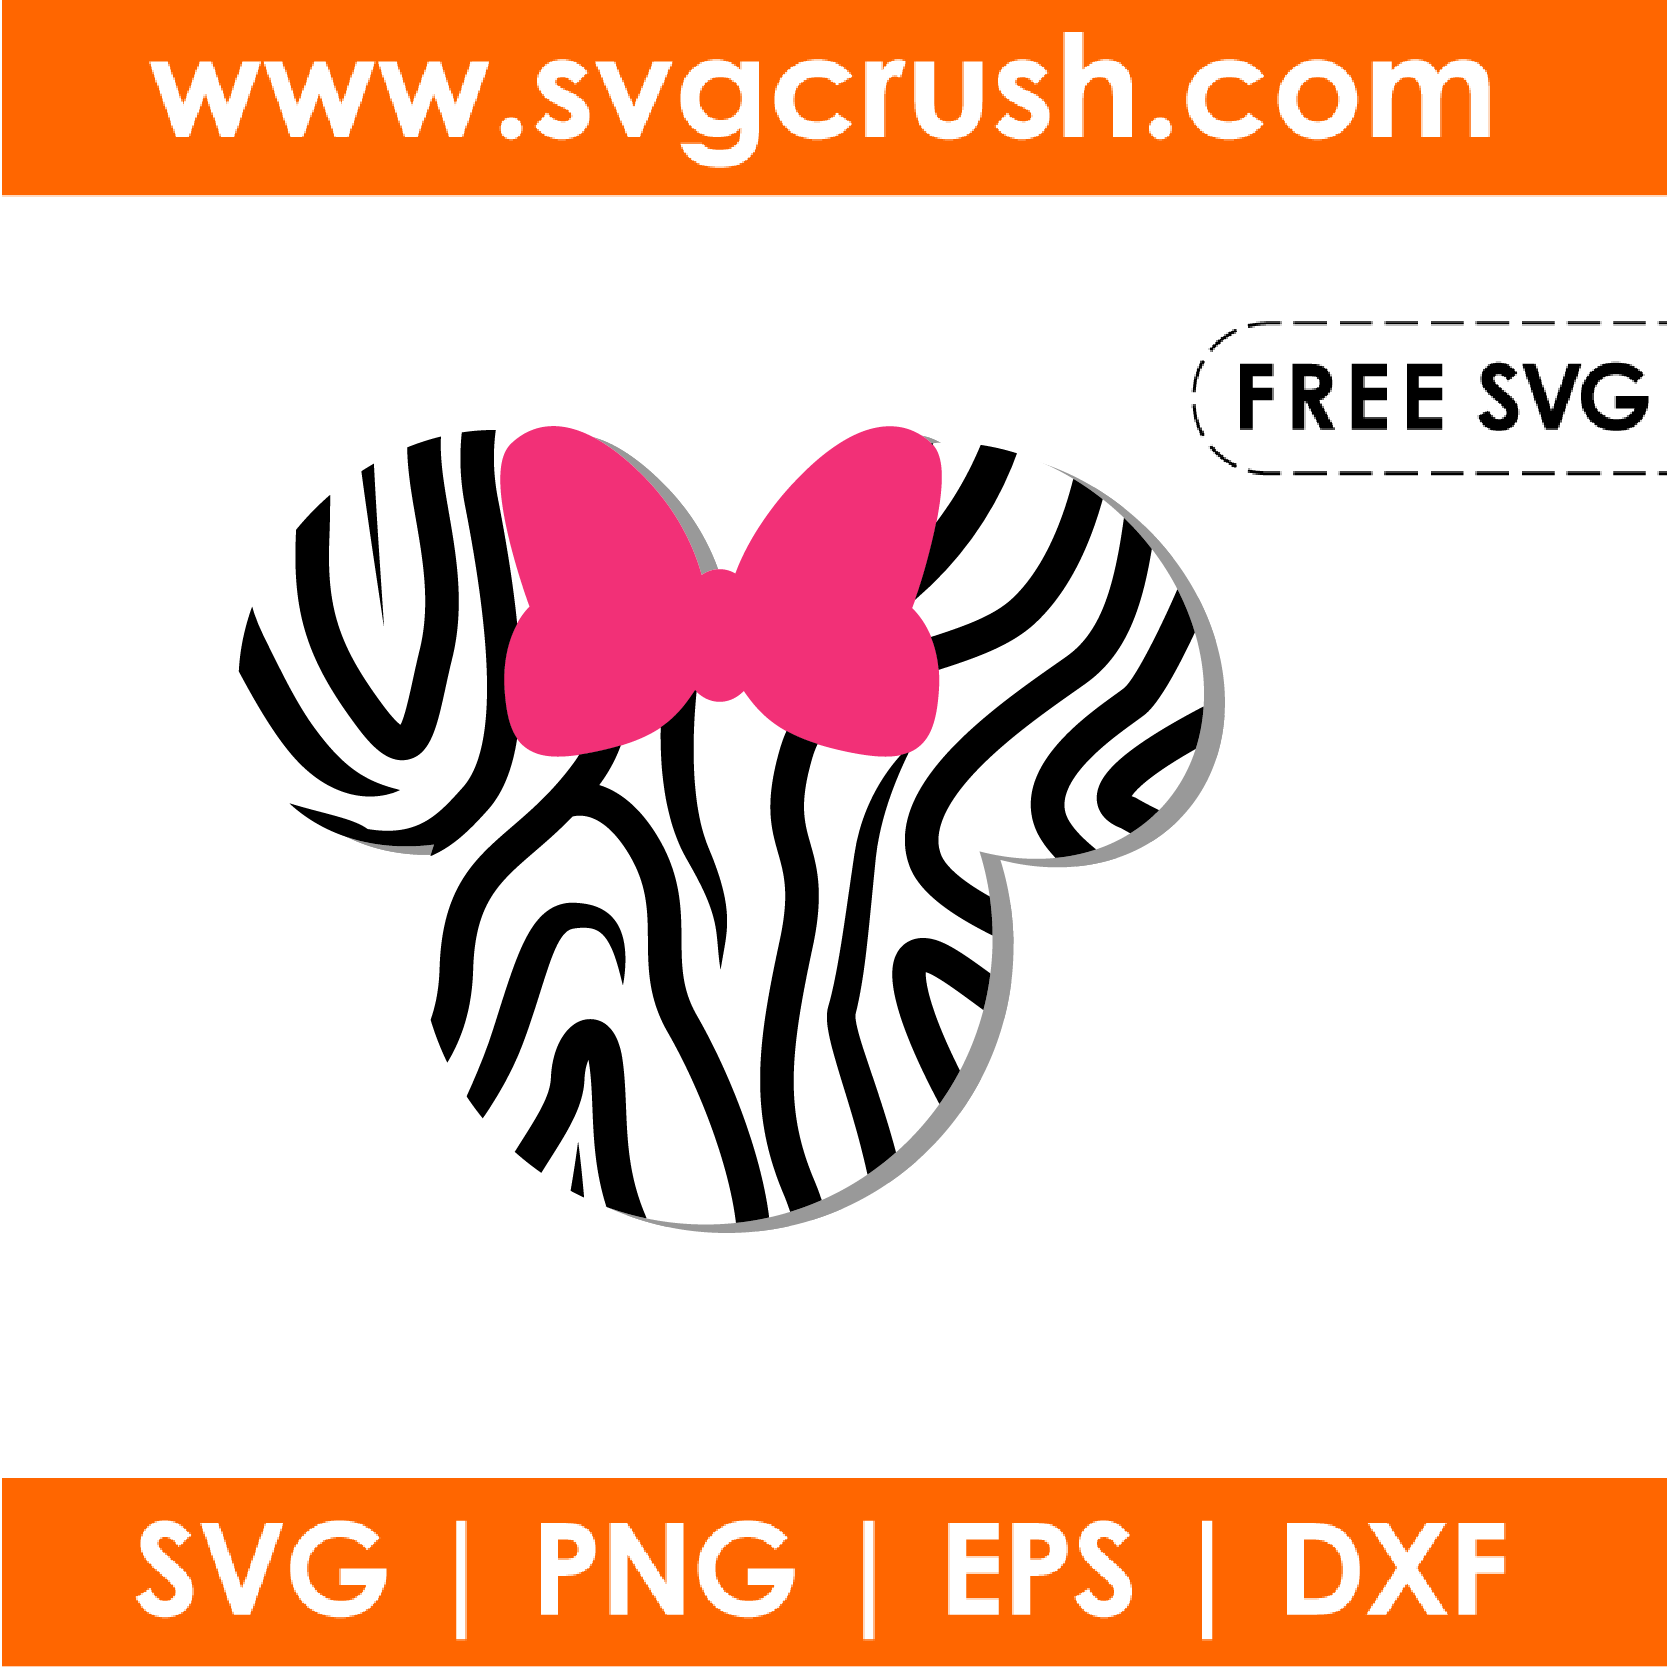 Free Free 60 Free Disney Svg Websites SVG PNG EPS DXF File